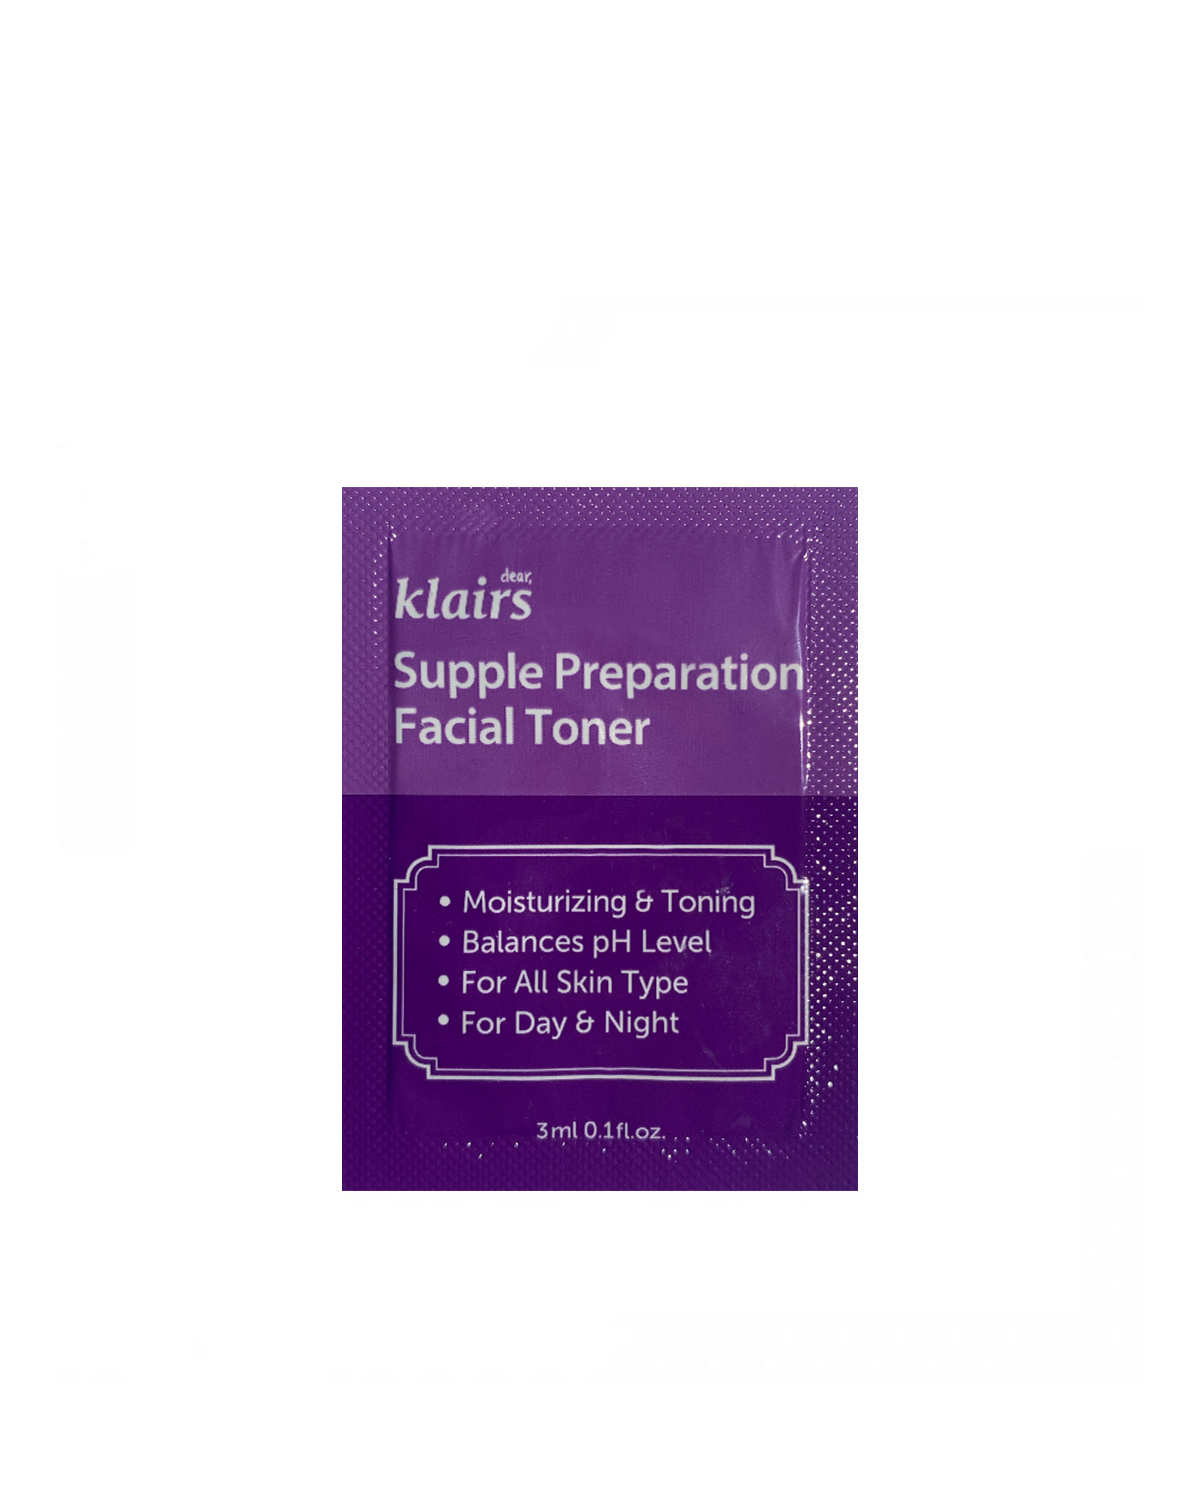 KLAIRS Supple Preparation Facial Toner Sample 3 ml